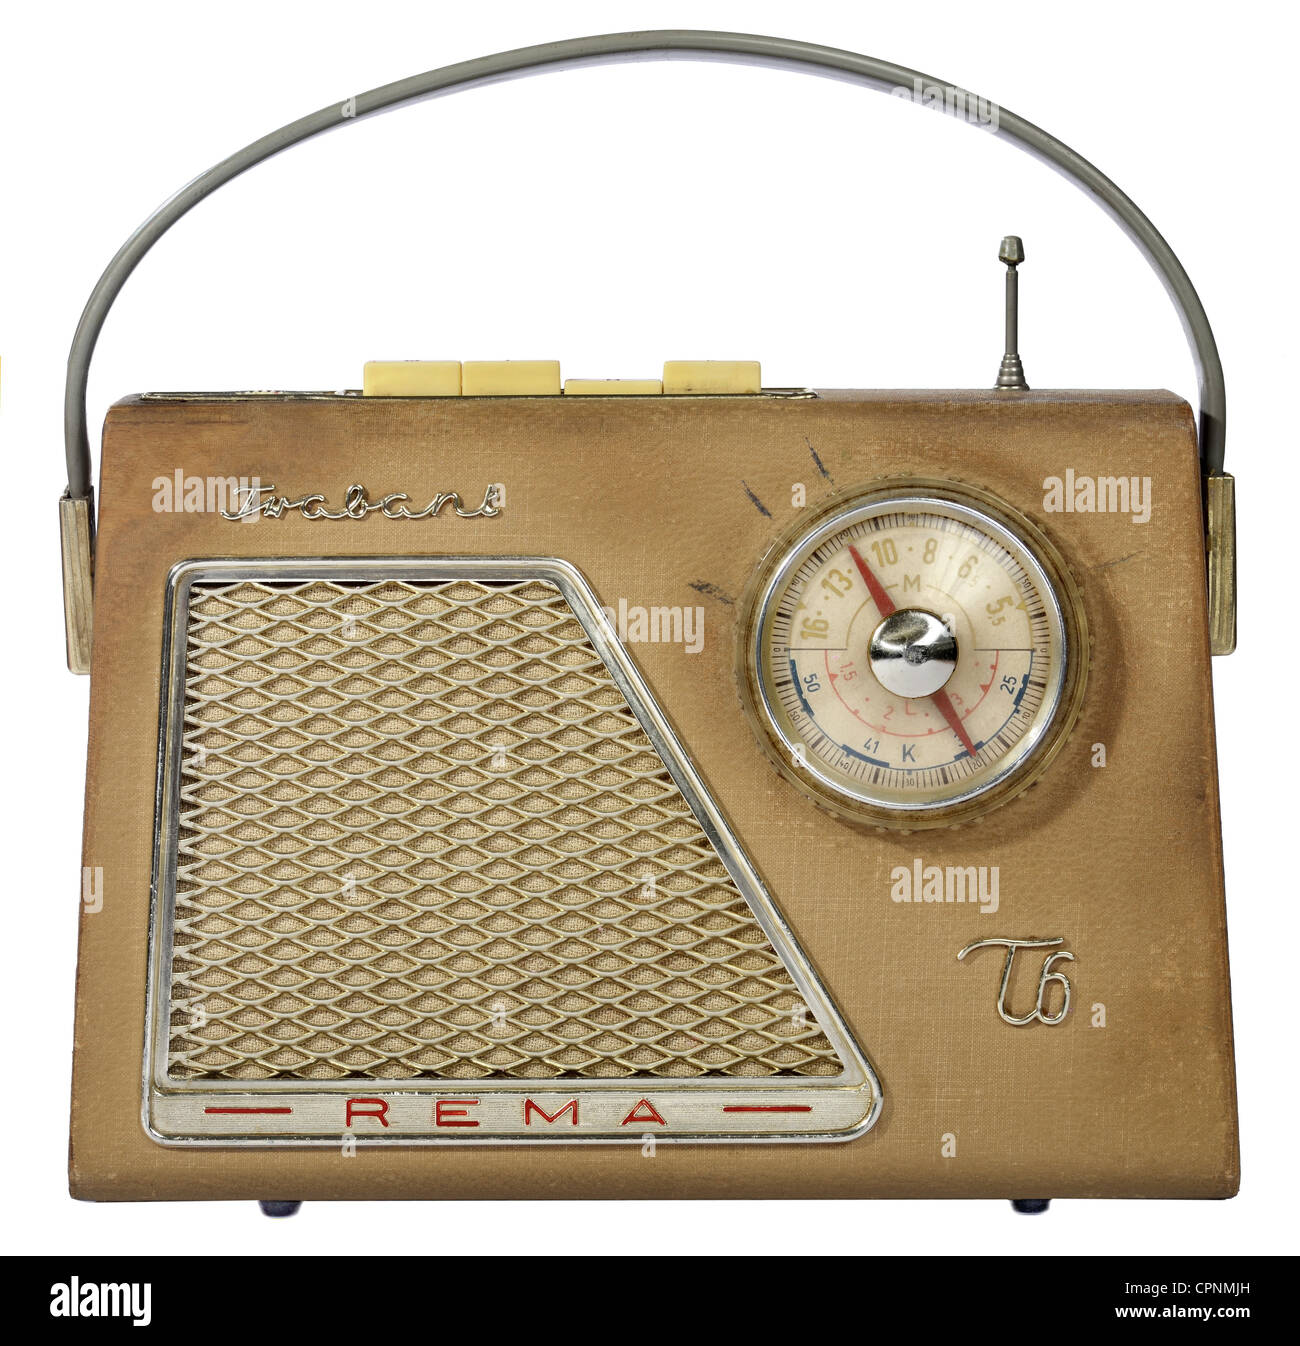 Broadcast, radio, radio portable Rema 'Trabant T6', appareil pèse 1,8kg, fabriqué par: Rema, Stollberg, Saxe, Allemagne de l'est, 1961, droits additionnels-Clearences-non disponible Banque D'Images